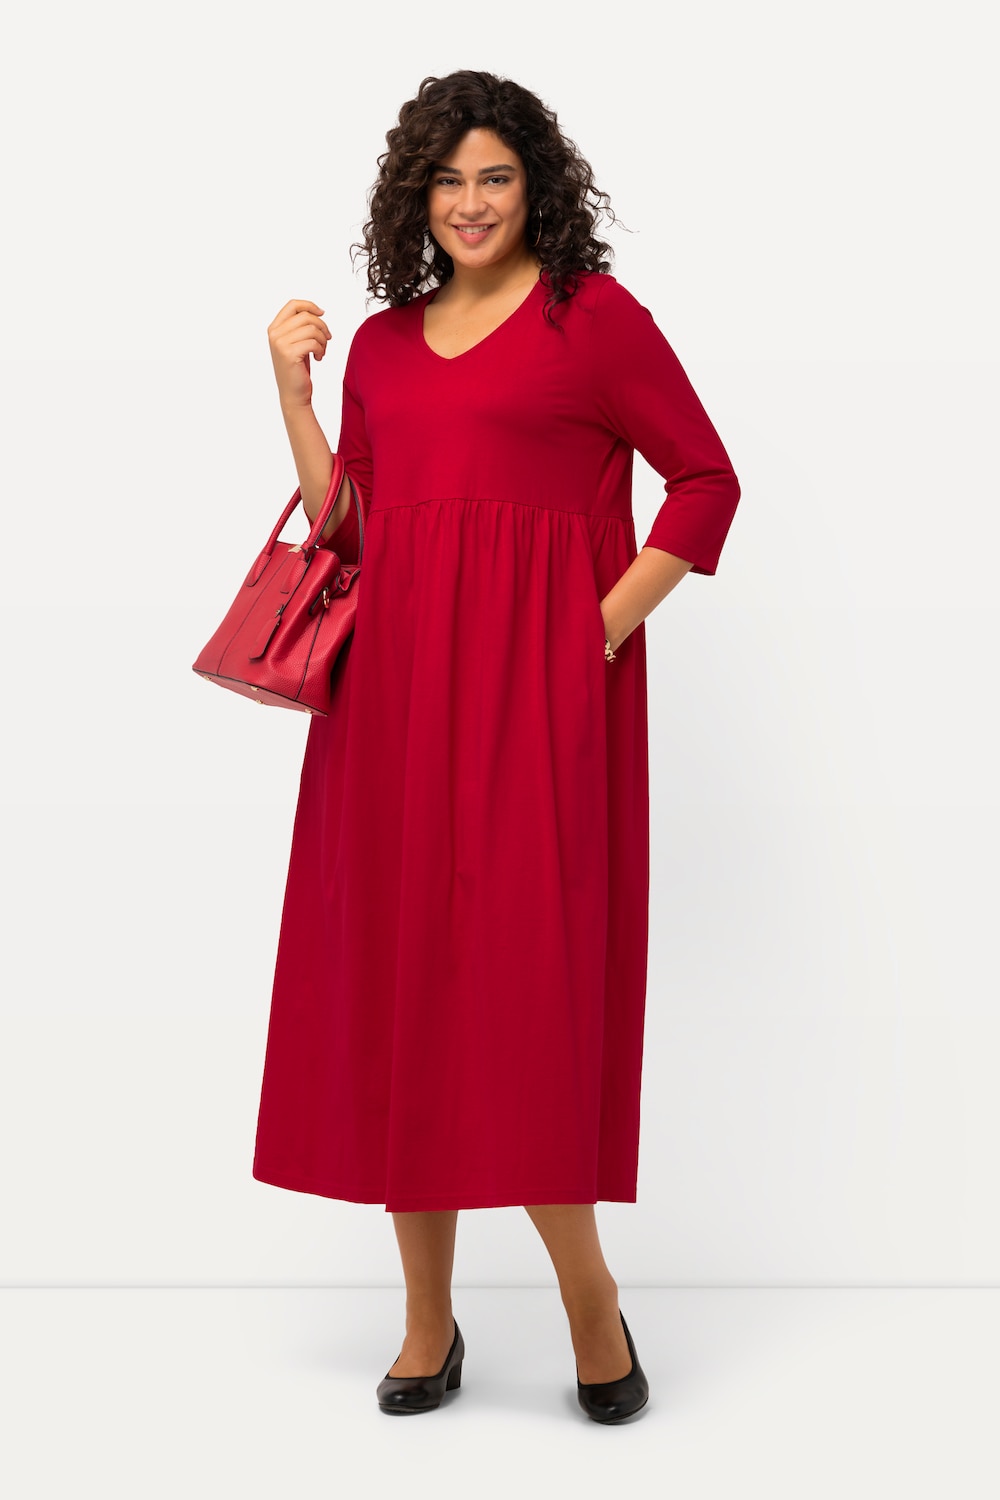 Grote Maten Jersey jurk, Dames, rood, Maat: 62/64, Katoen, Ulla Popken